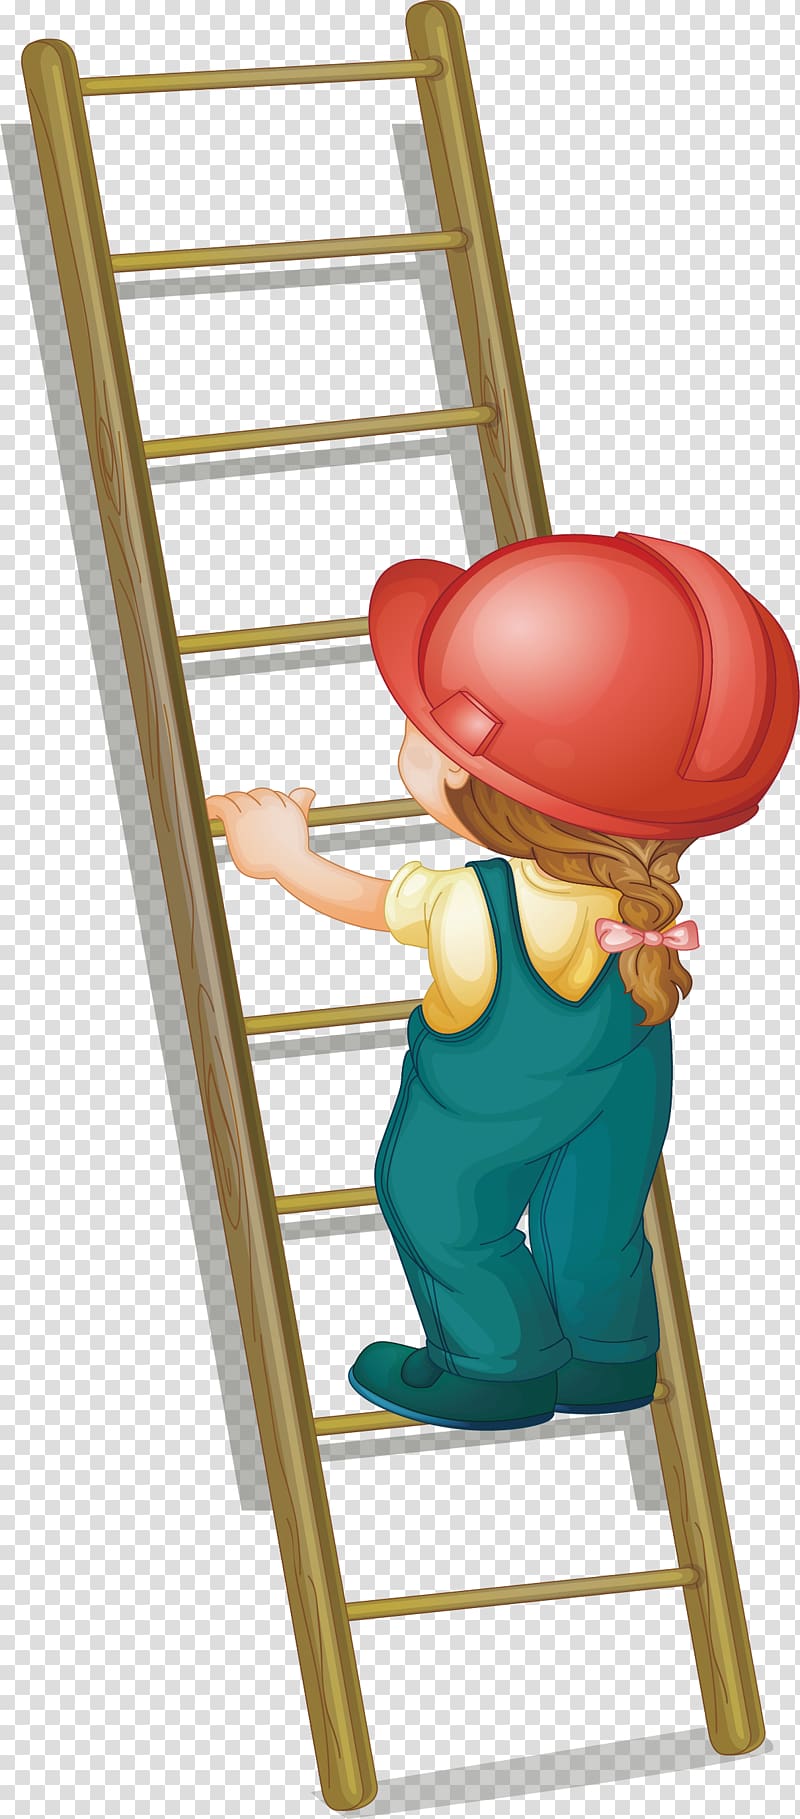 Ladder Illustration, Step on the ladder up transparent background PNG clipart